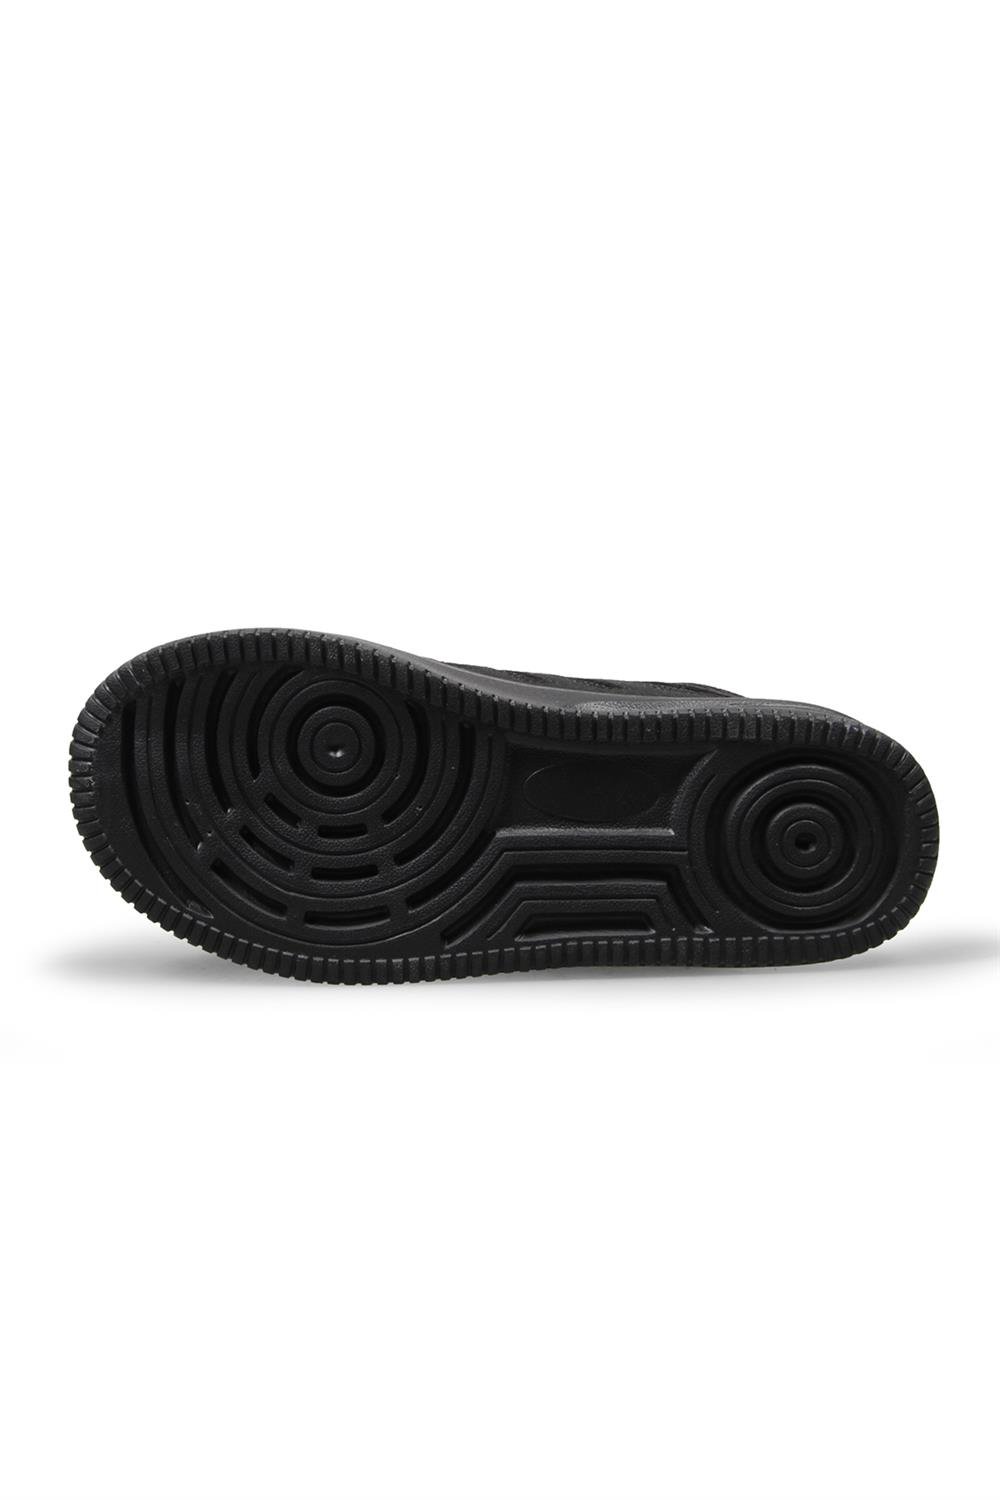 MP ONE Çocuk Bilekli Cırt Cırtlı Siyah Spor Ayakkabı